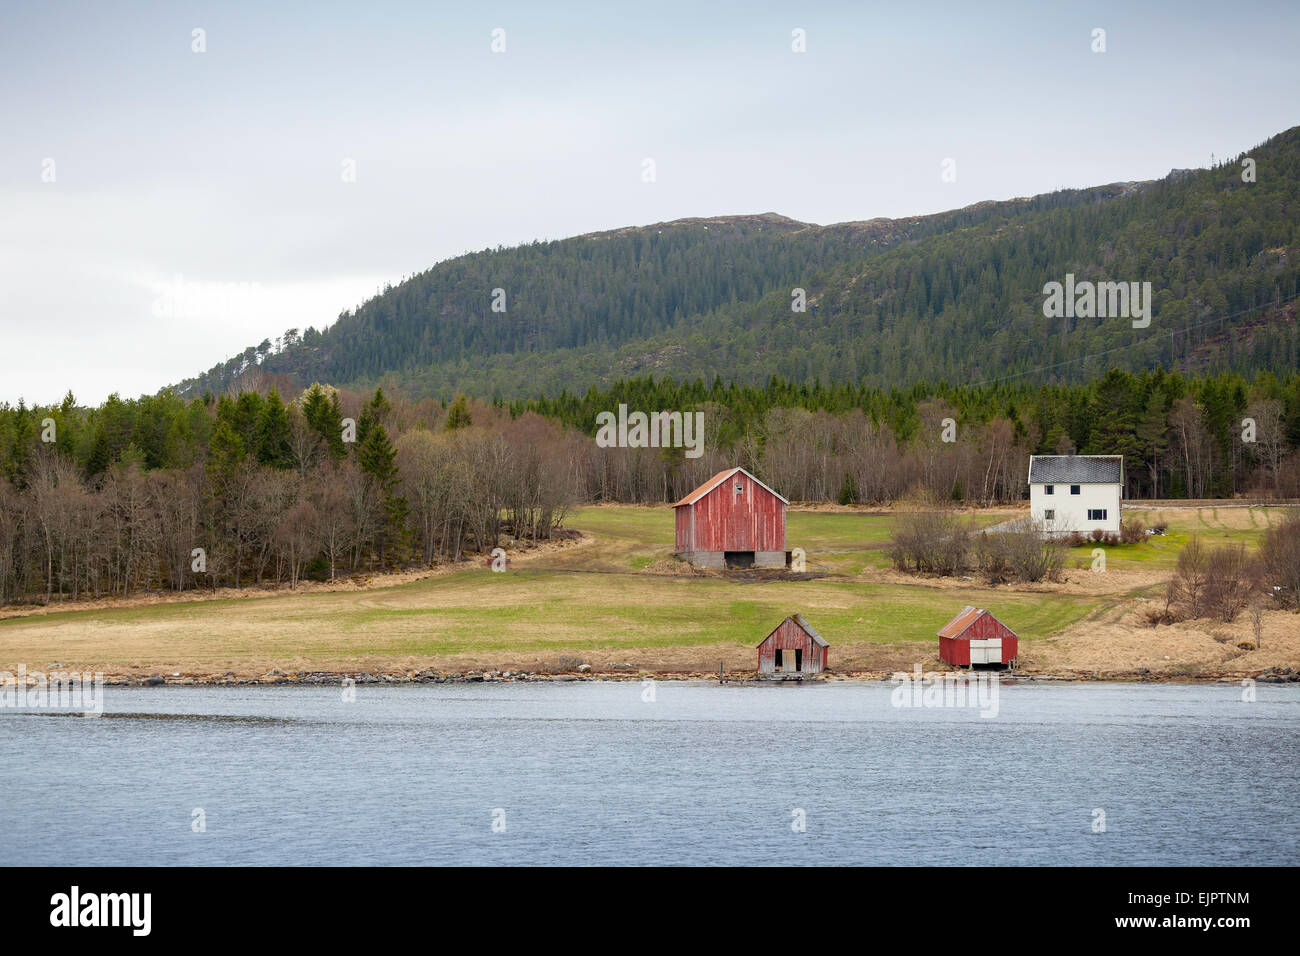 Petit village traditionnel norvégien, maisons et granges en bois coloré sur le littoral Banque D'Images